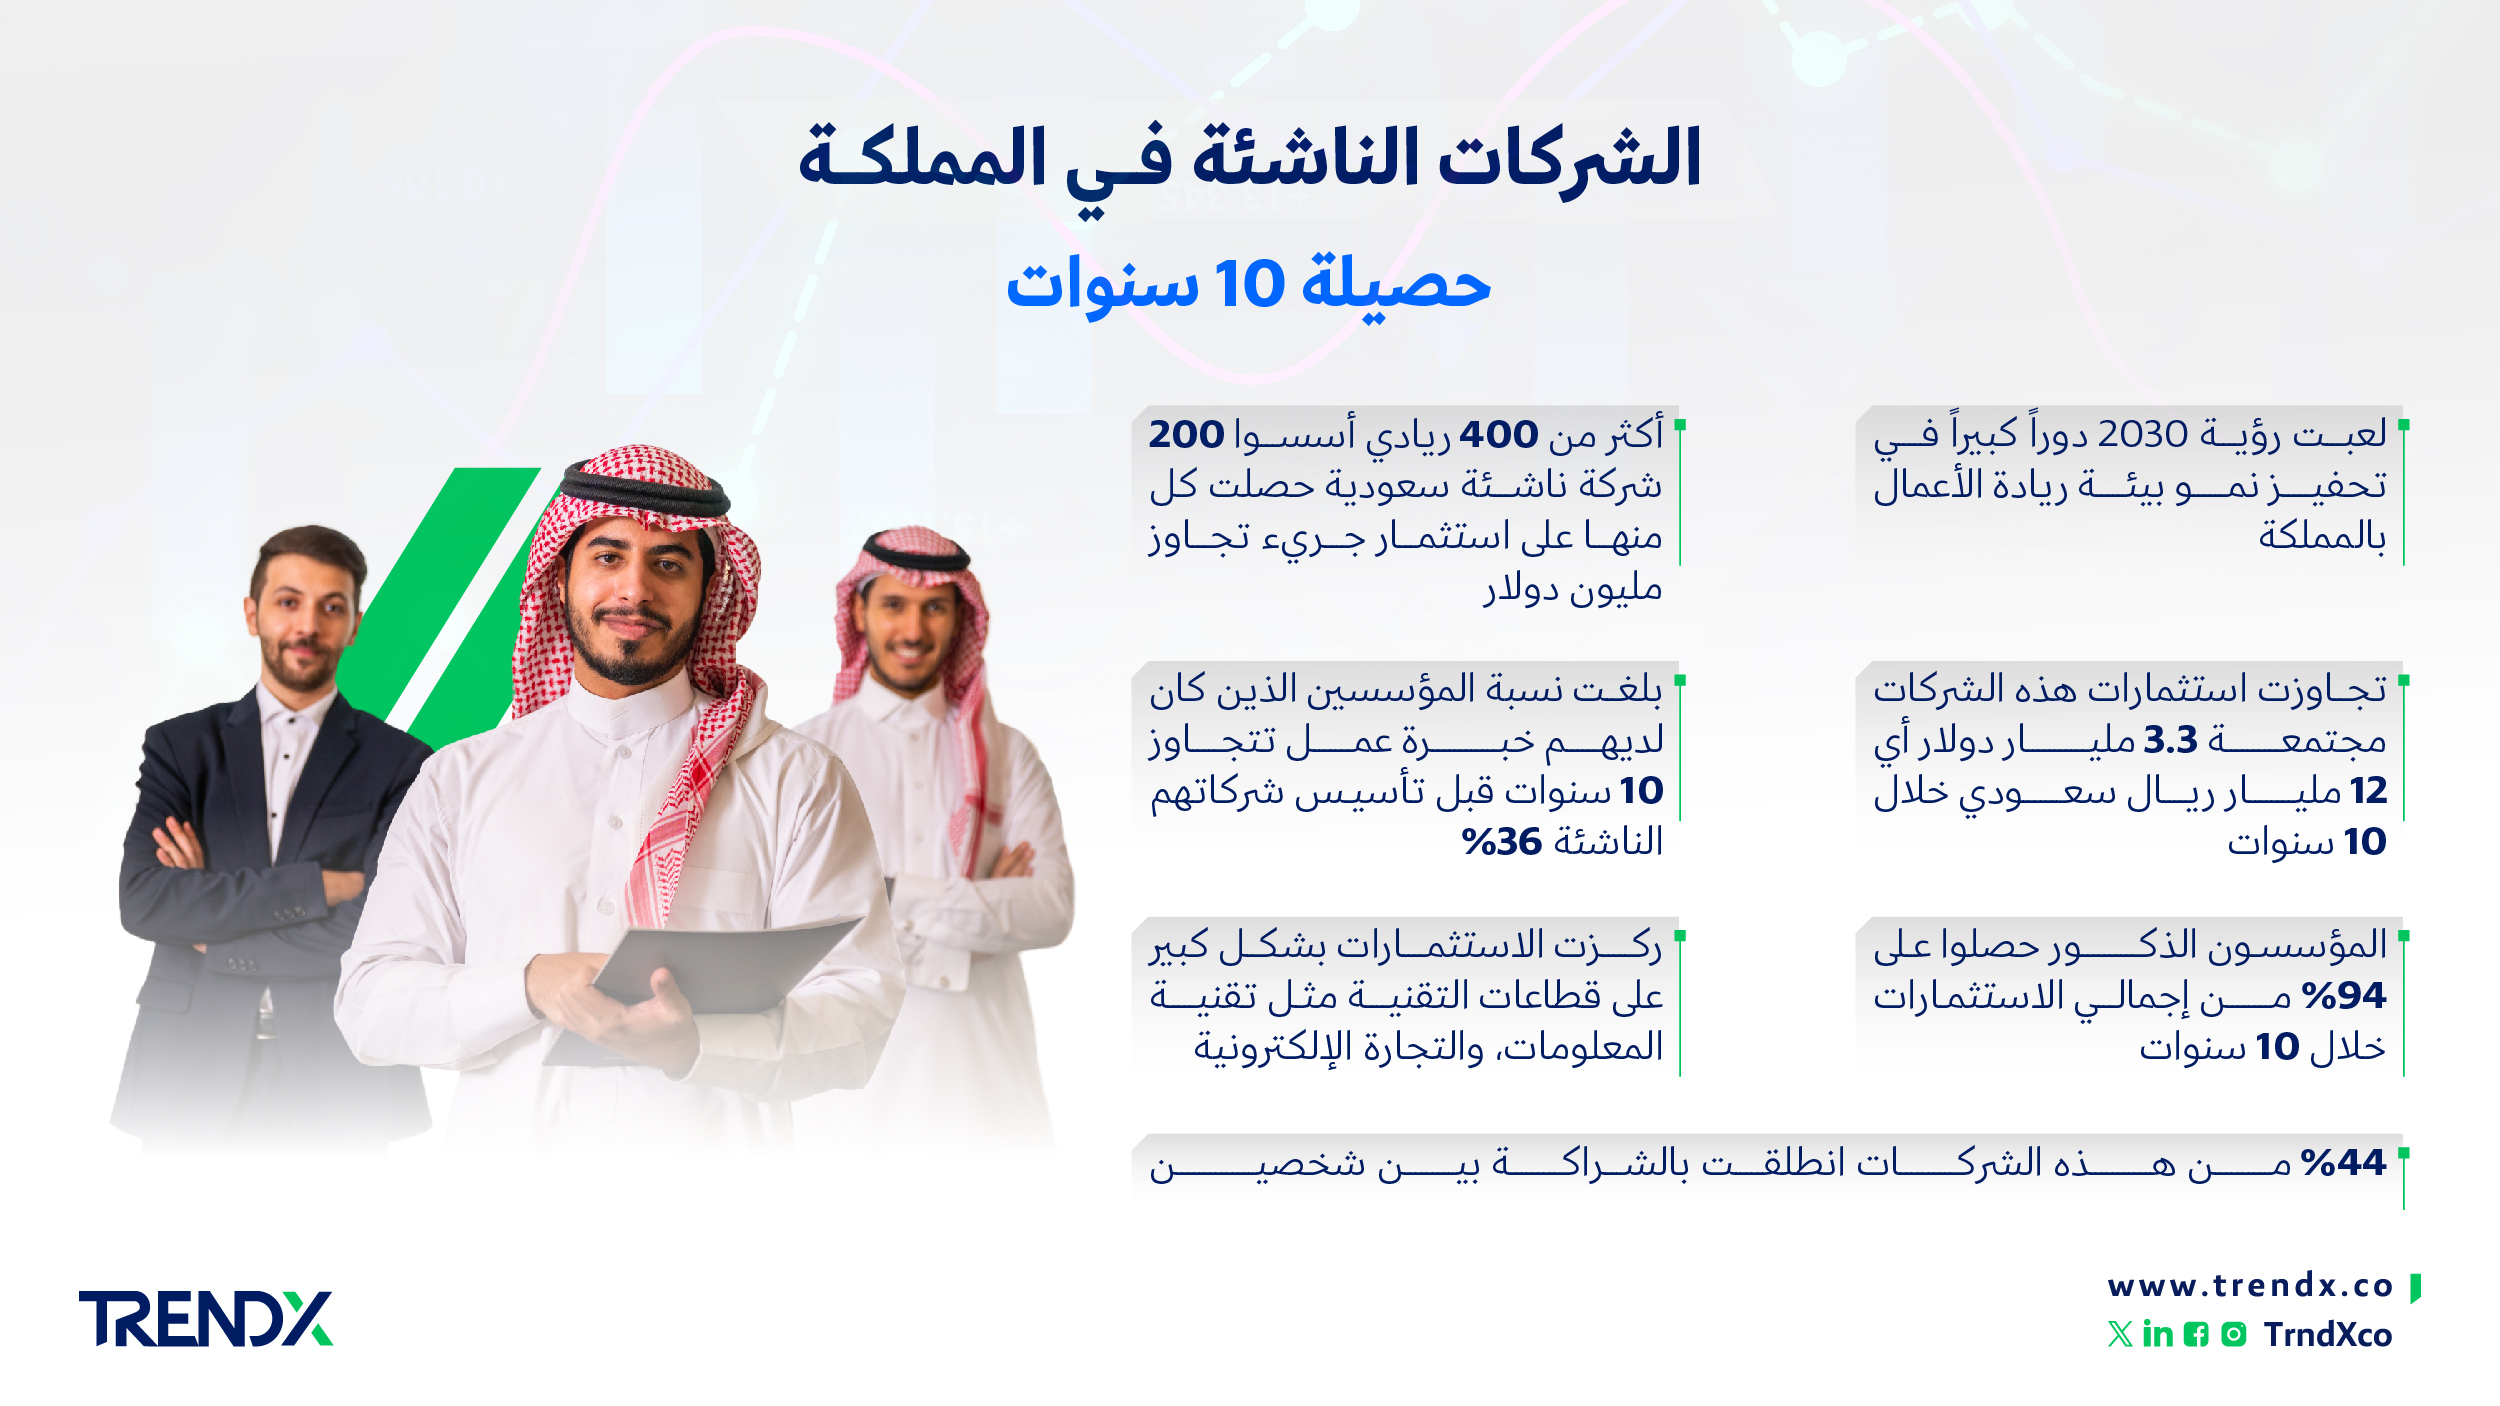 الشركات الناشئة في المملكة. حصيلة 10 سنوات ثروات السعوديين في الفترة من عام 2000 إلى 2022